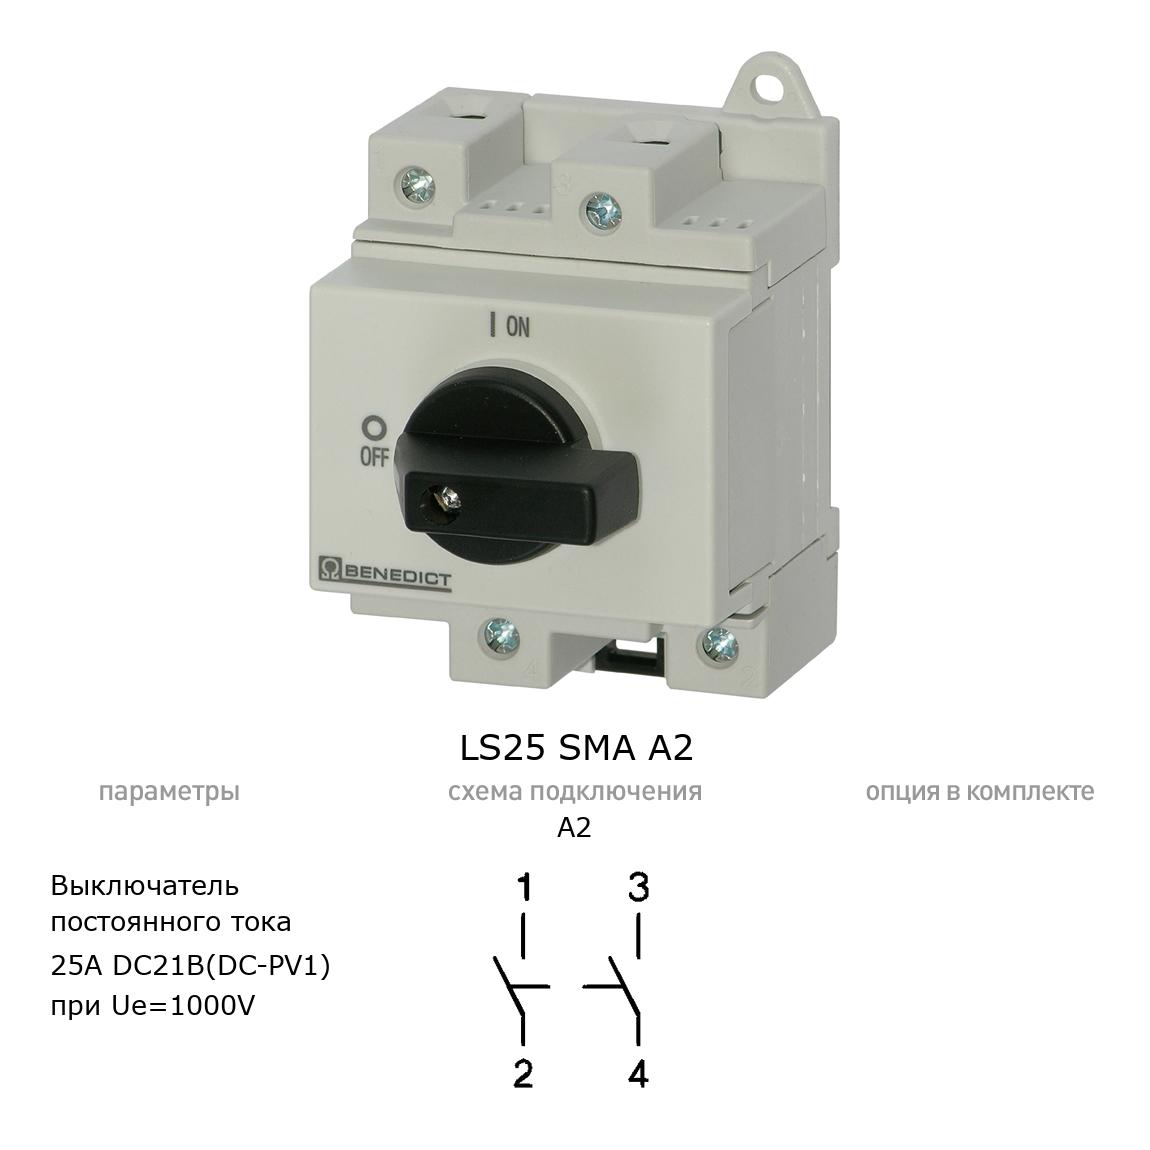 Кулачковый переключатель для постоянного тока (DC) LS25 SMA A2 BENEDICT